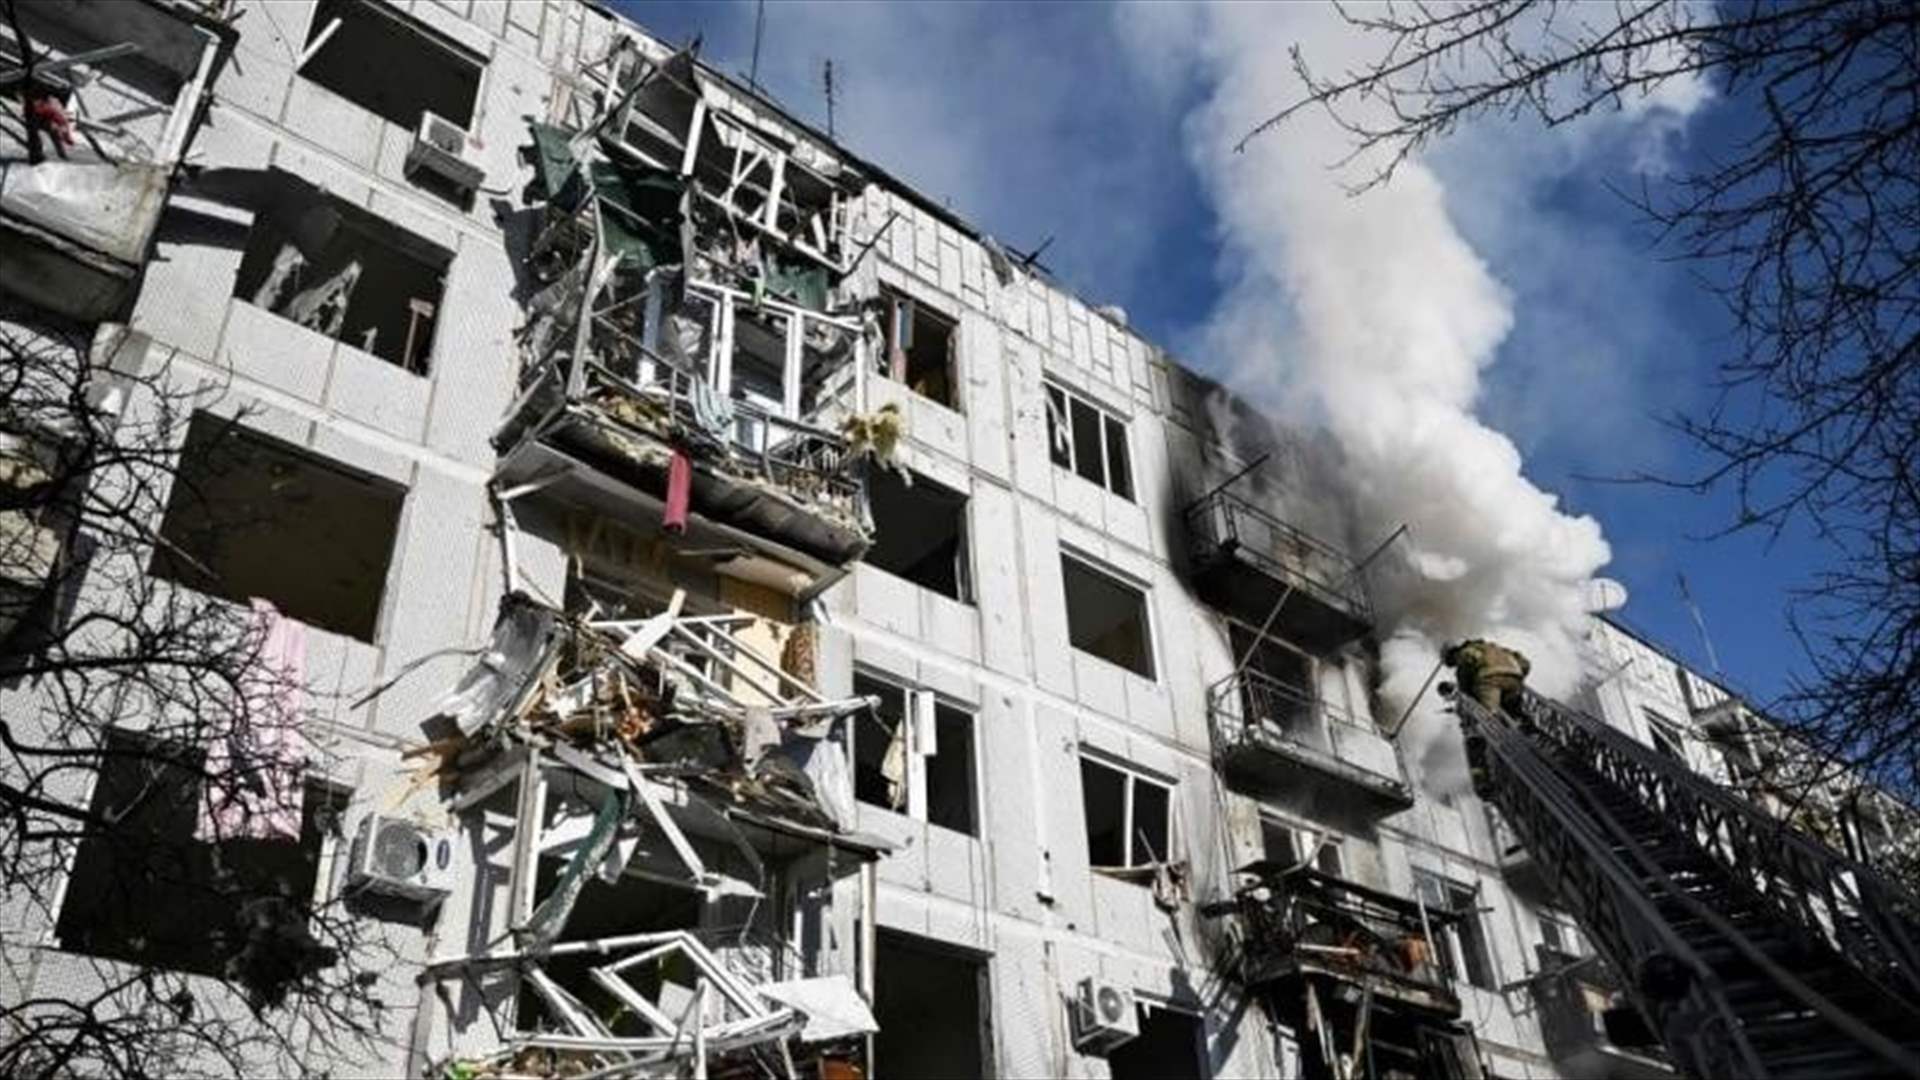 ارتفاع حصيلة القصف الروسي لمبنى سكني في شرق أوكرانيا الى خمسة قتلى و31 جريحا